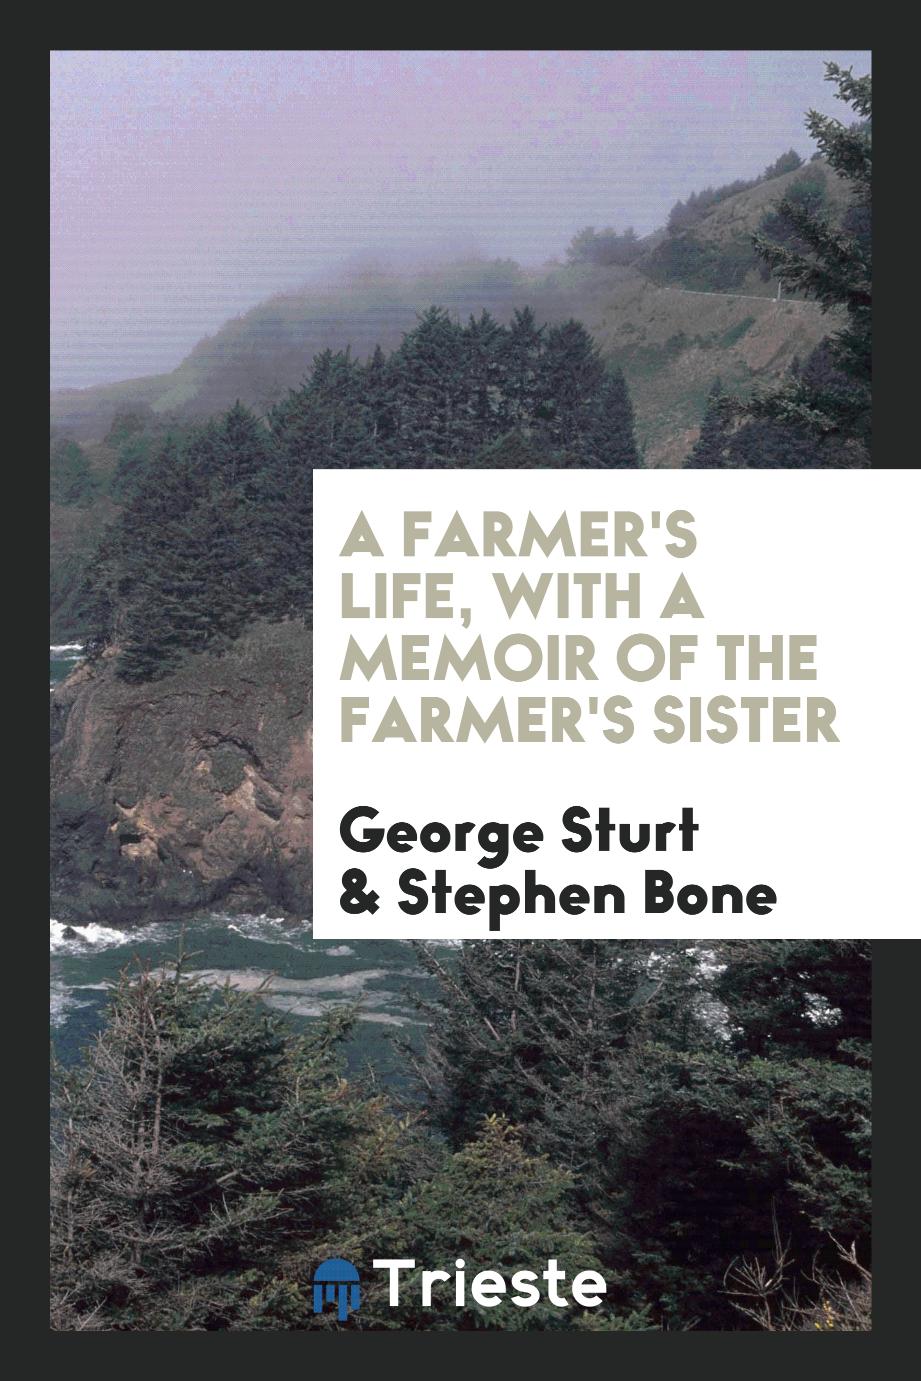 A farmer's life, with a memoir of the farmer's sister